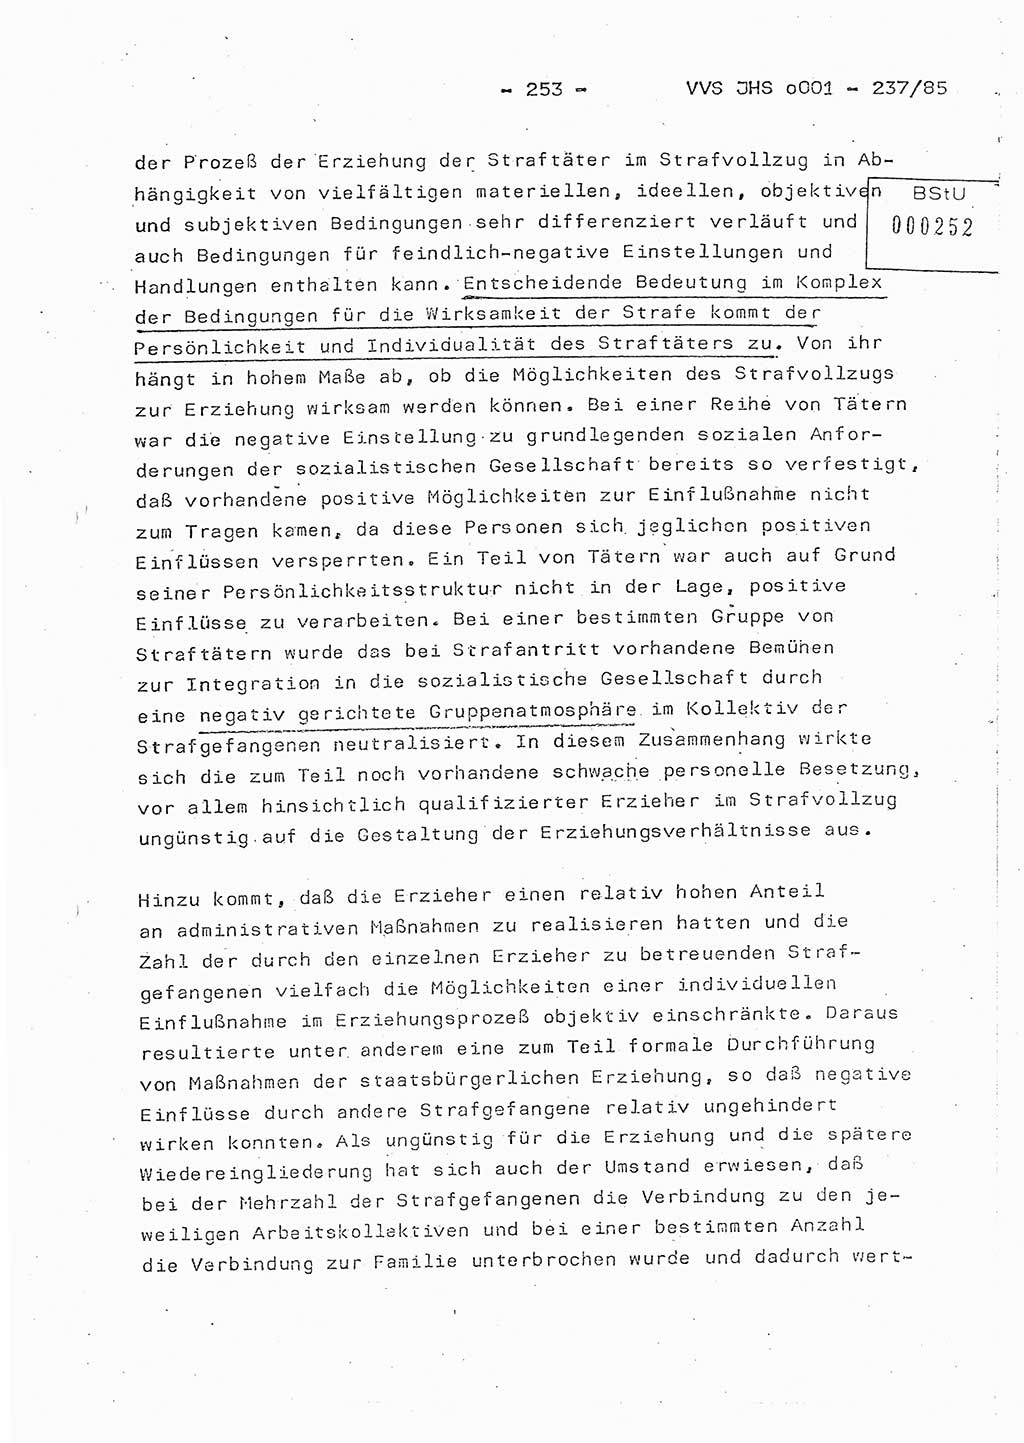 Dissertation Oberstleutnant Peter Jakulski (JHS), Oberstleutnat Christian Rudolph (HA Ⅸ), Major Horst Böttger (ZMD), Major Wolfgang Grüneberg (JHS), Major Albert Meutsch (JHS), Ministerium für Staatssicherheit (MfS) [Deutsche Demokratische Republik (DDR)], Juristische Hochschule (JHS), Vertrauliche Verschlußsache (VVS) o001-237/85, Potsdam 1985, Seite 253 (Diss. MfS DDR JHS VVS o001-237/85 1985, S. 253)